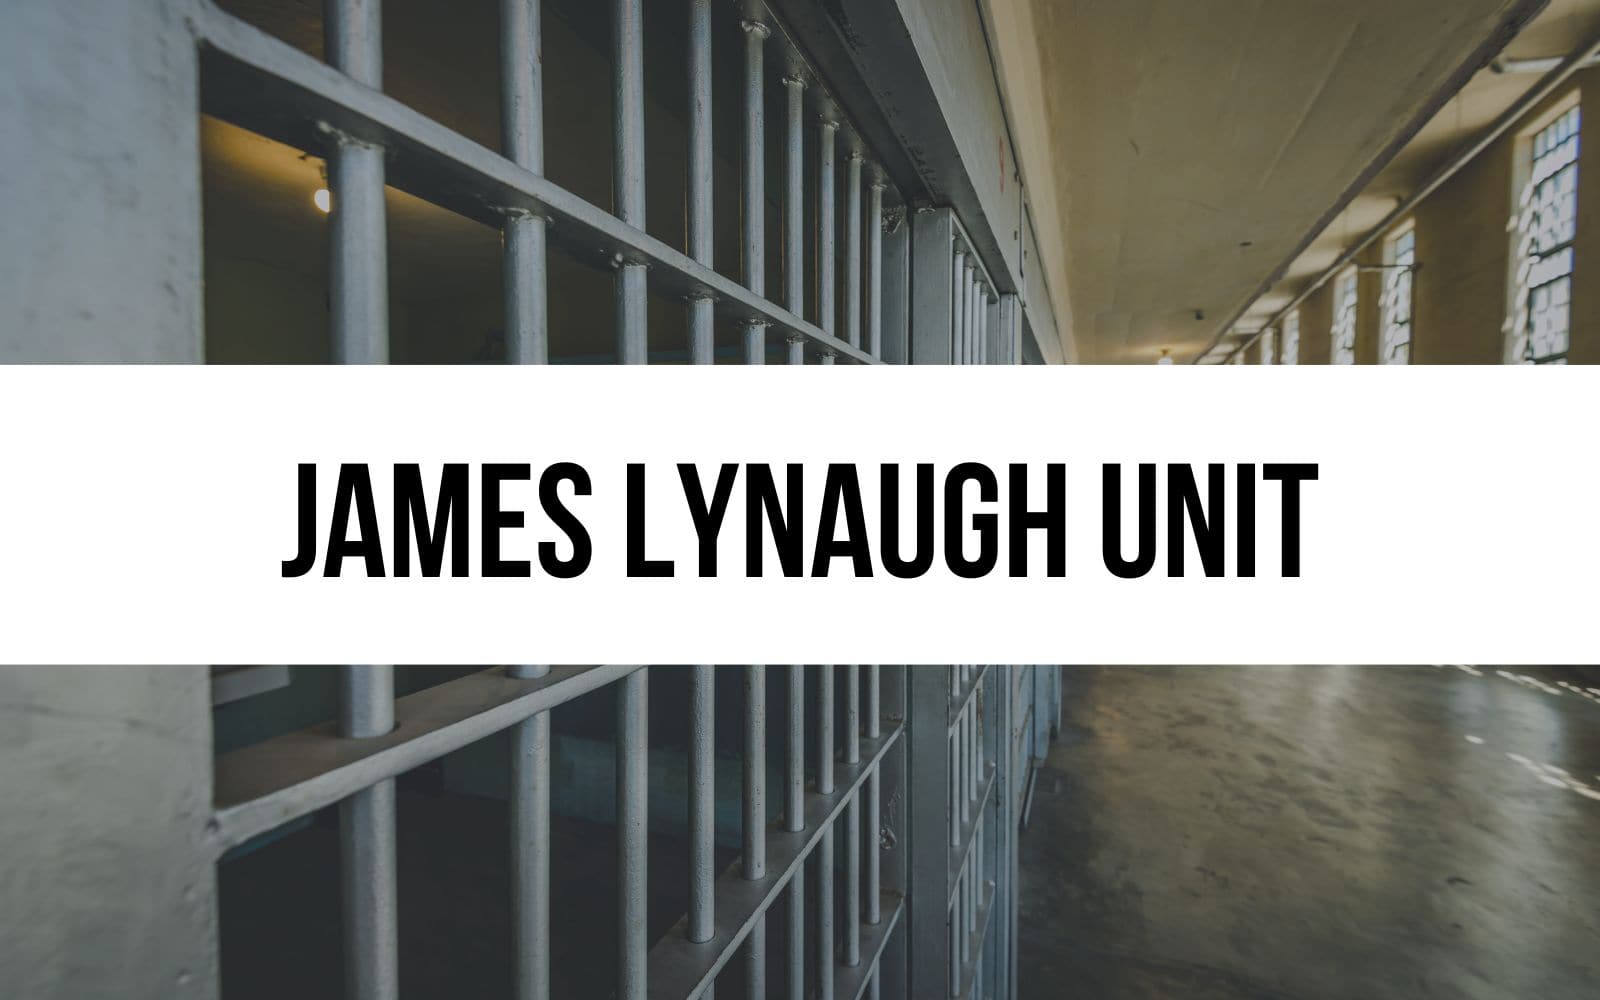 James Lynaugh Unit